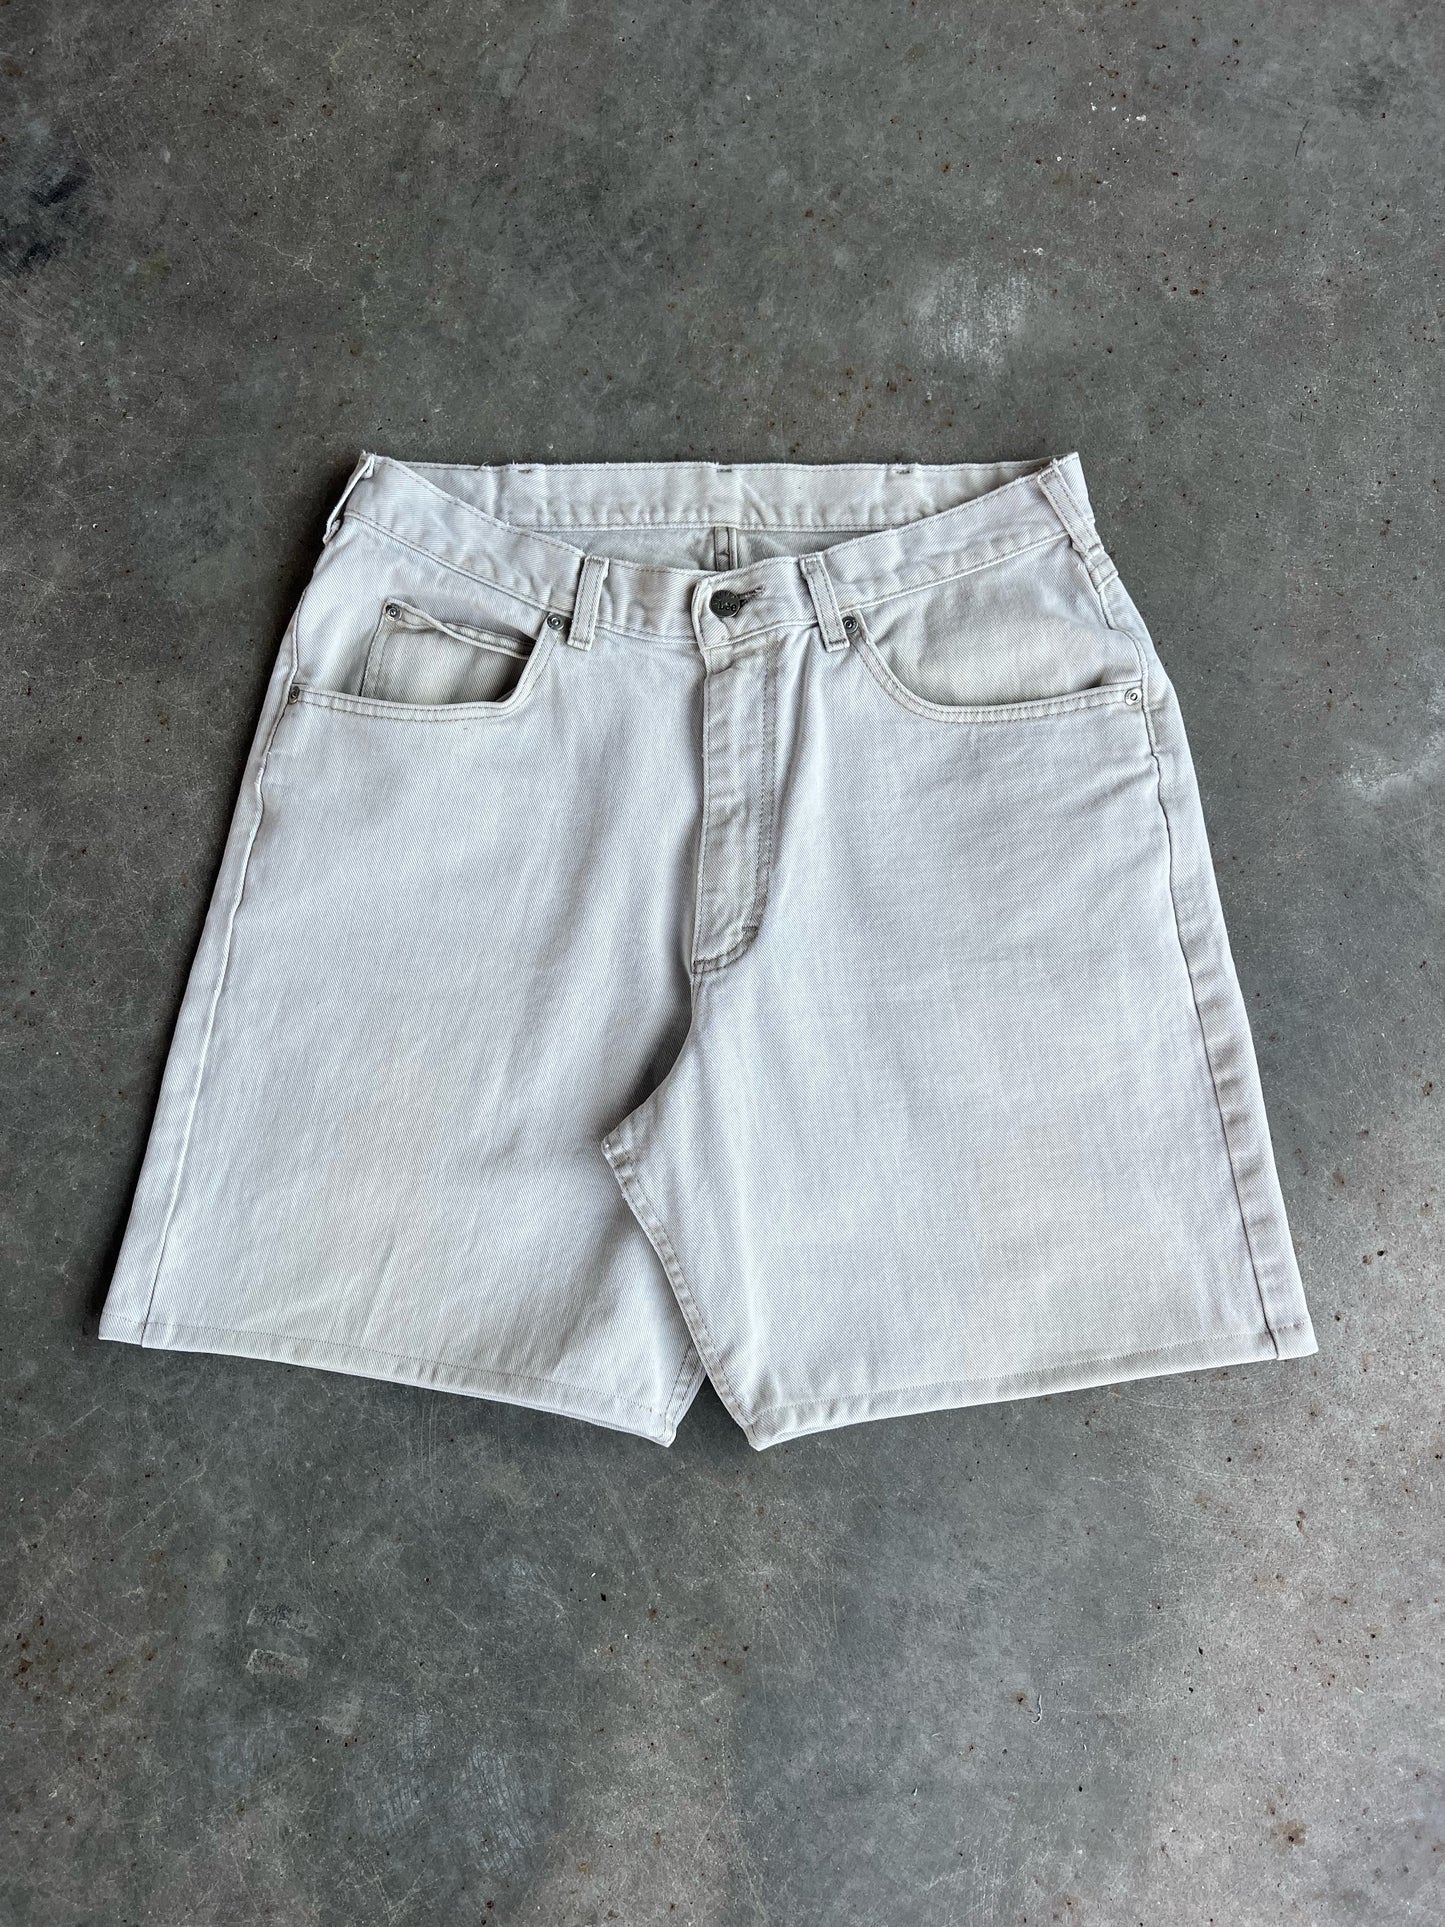 Reworked Lee Denim Shorts - 32